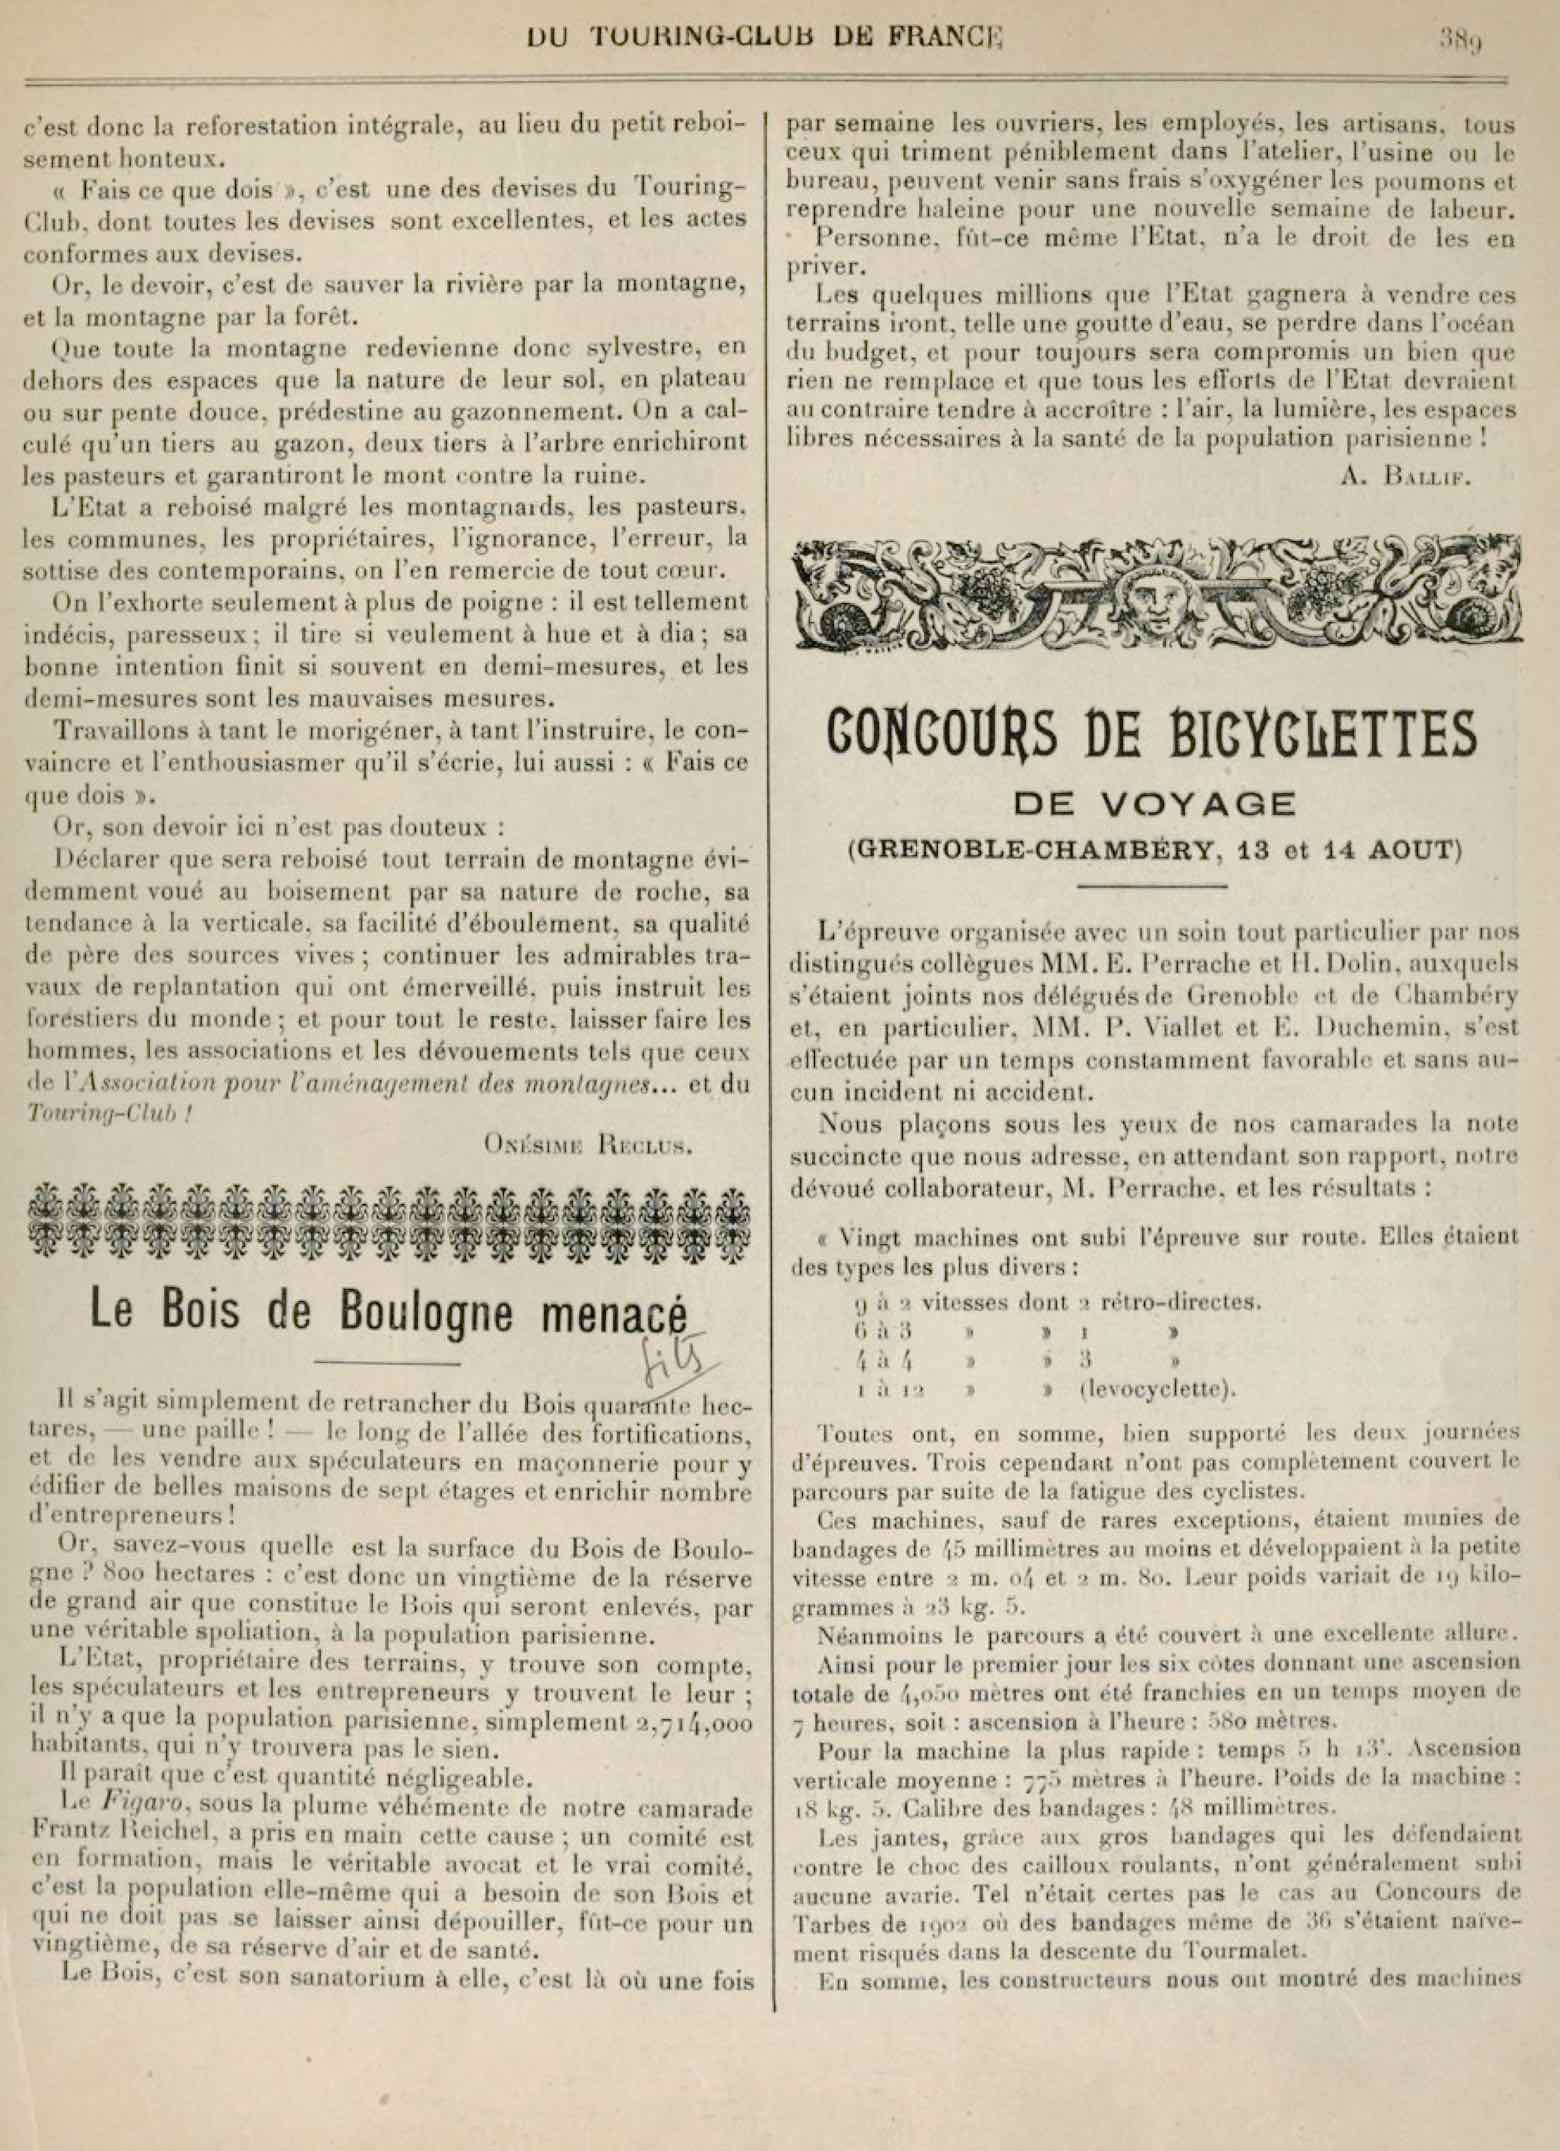 T.C.F. Revue Mensuelle September 1905 - Concours de Bicyclettes de Voyage (part II) scan 1 main image